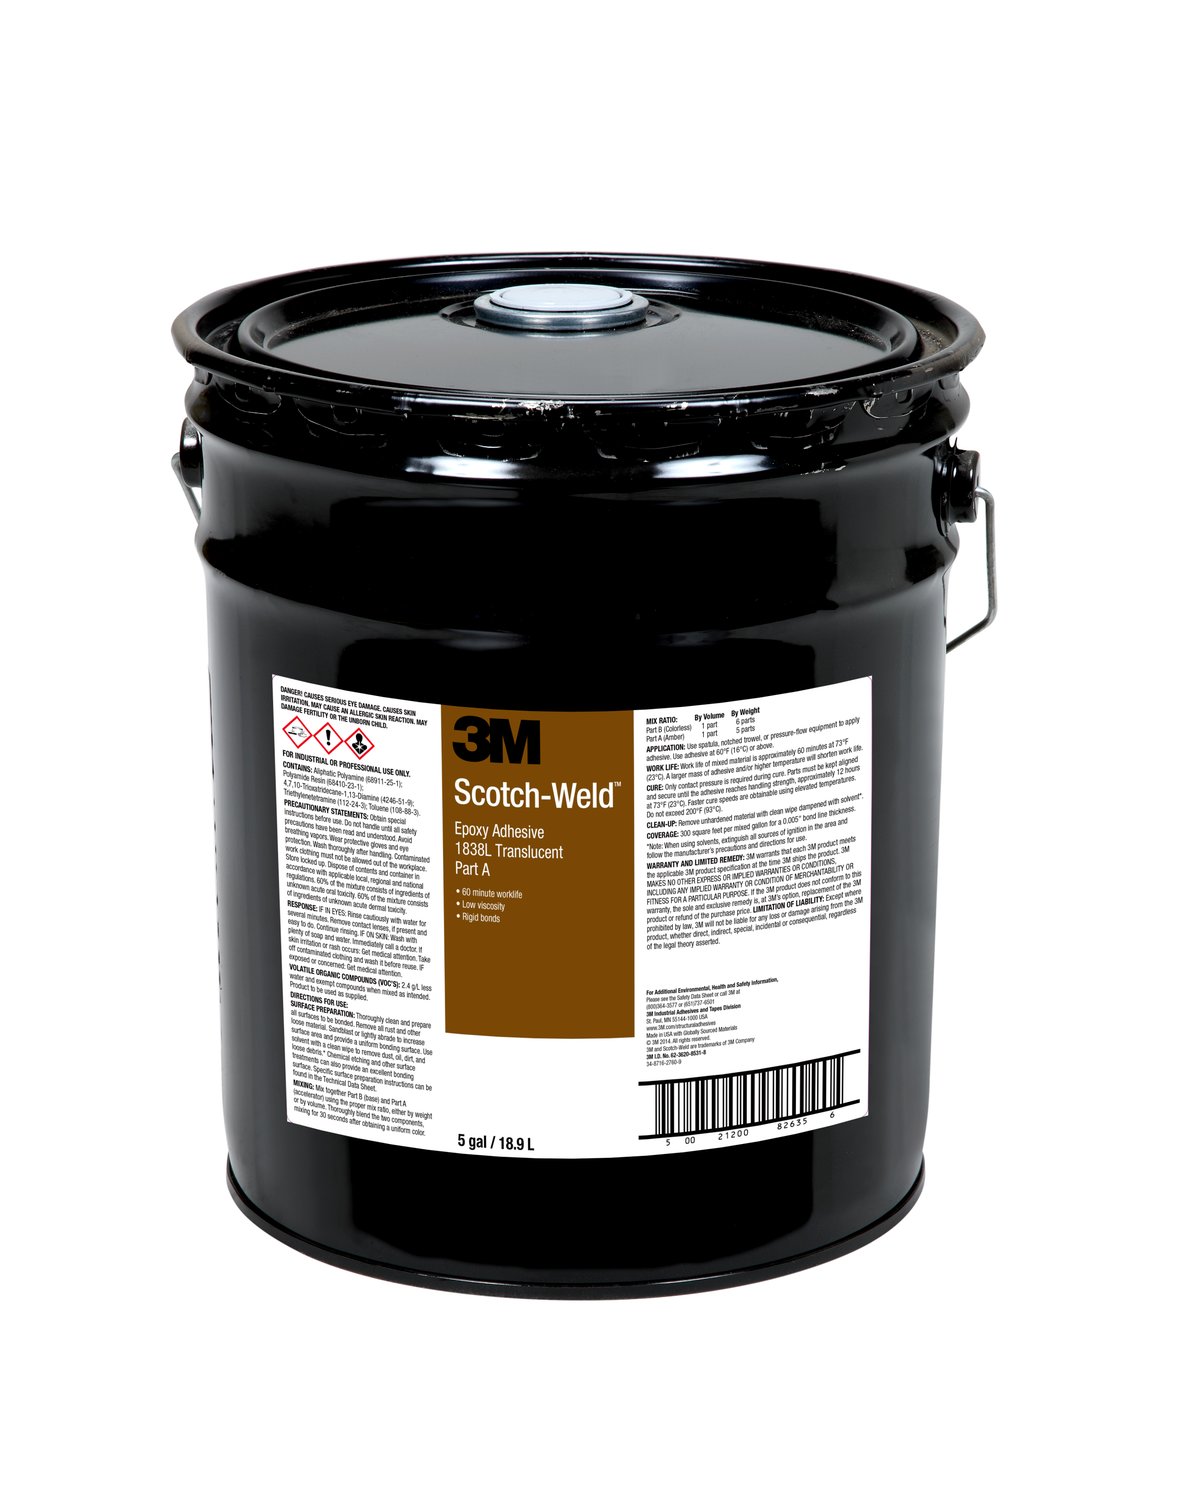 7010366157 - 3M Scotch-Weld Epoxy Adhesive 1838L, Translucent, Part A, 5 Gallon
(Pail), Drum